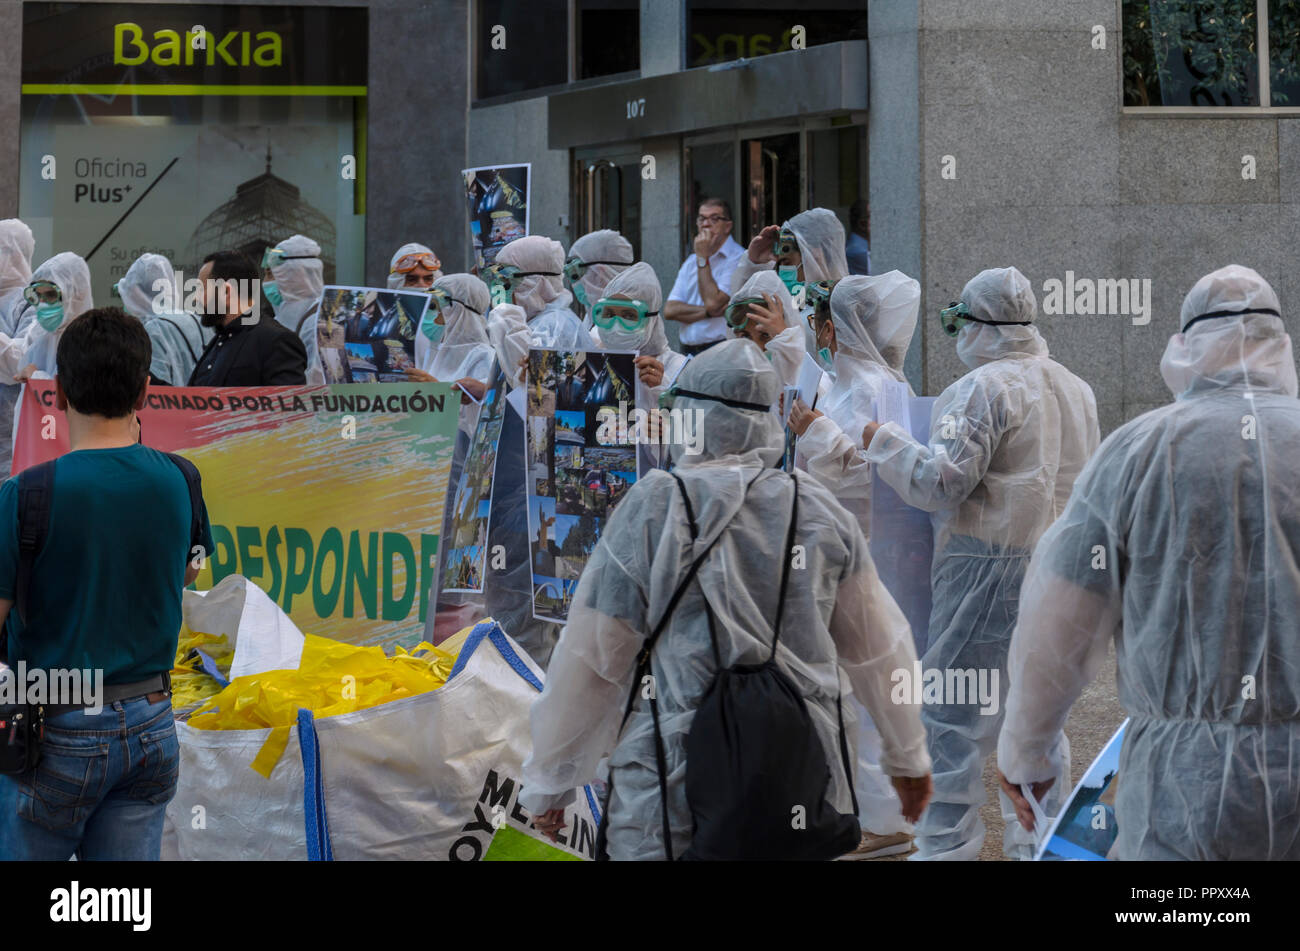 Madrid, Spagna. Il 28 settembre 2018. Rally contro giallo nodo della Catalogna indipendenza, il 28 settembre 2018 via San Bernardo, Madrid, Spagna. Enrique Davó/Alamy Live News Foto Stock